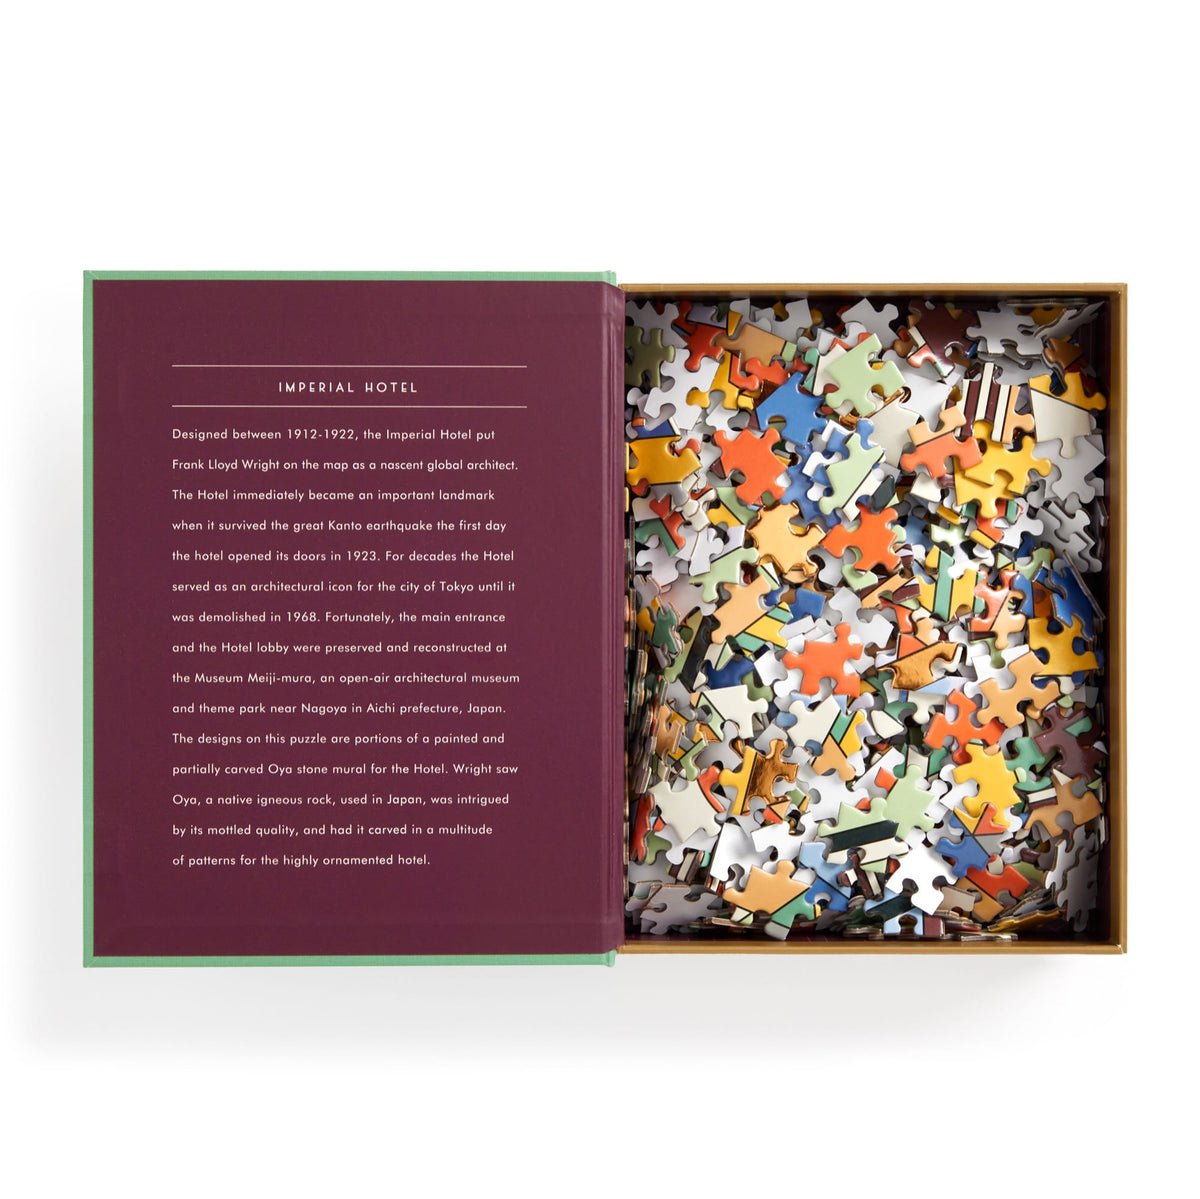 Frank Lloyd Wright - Imperial Hotel - díszdobozban, aranyfóliás Galison 500 darabos kirakó puzzle (GA-9780735381353 9780735381353) - puzzlegarden